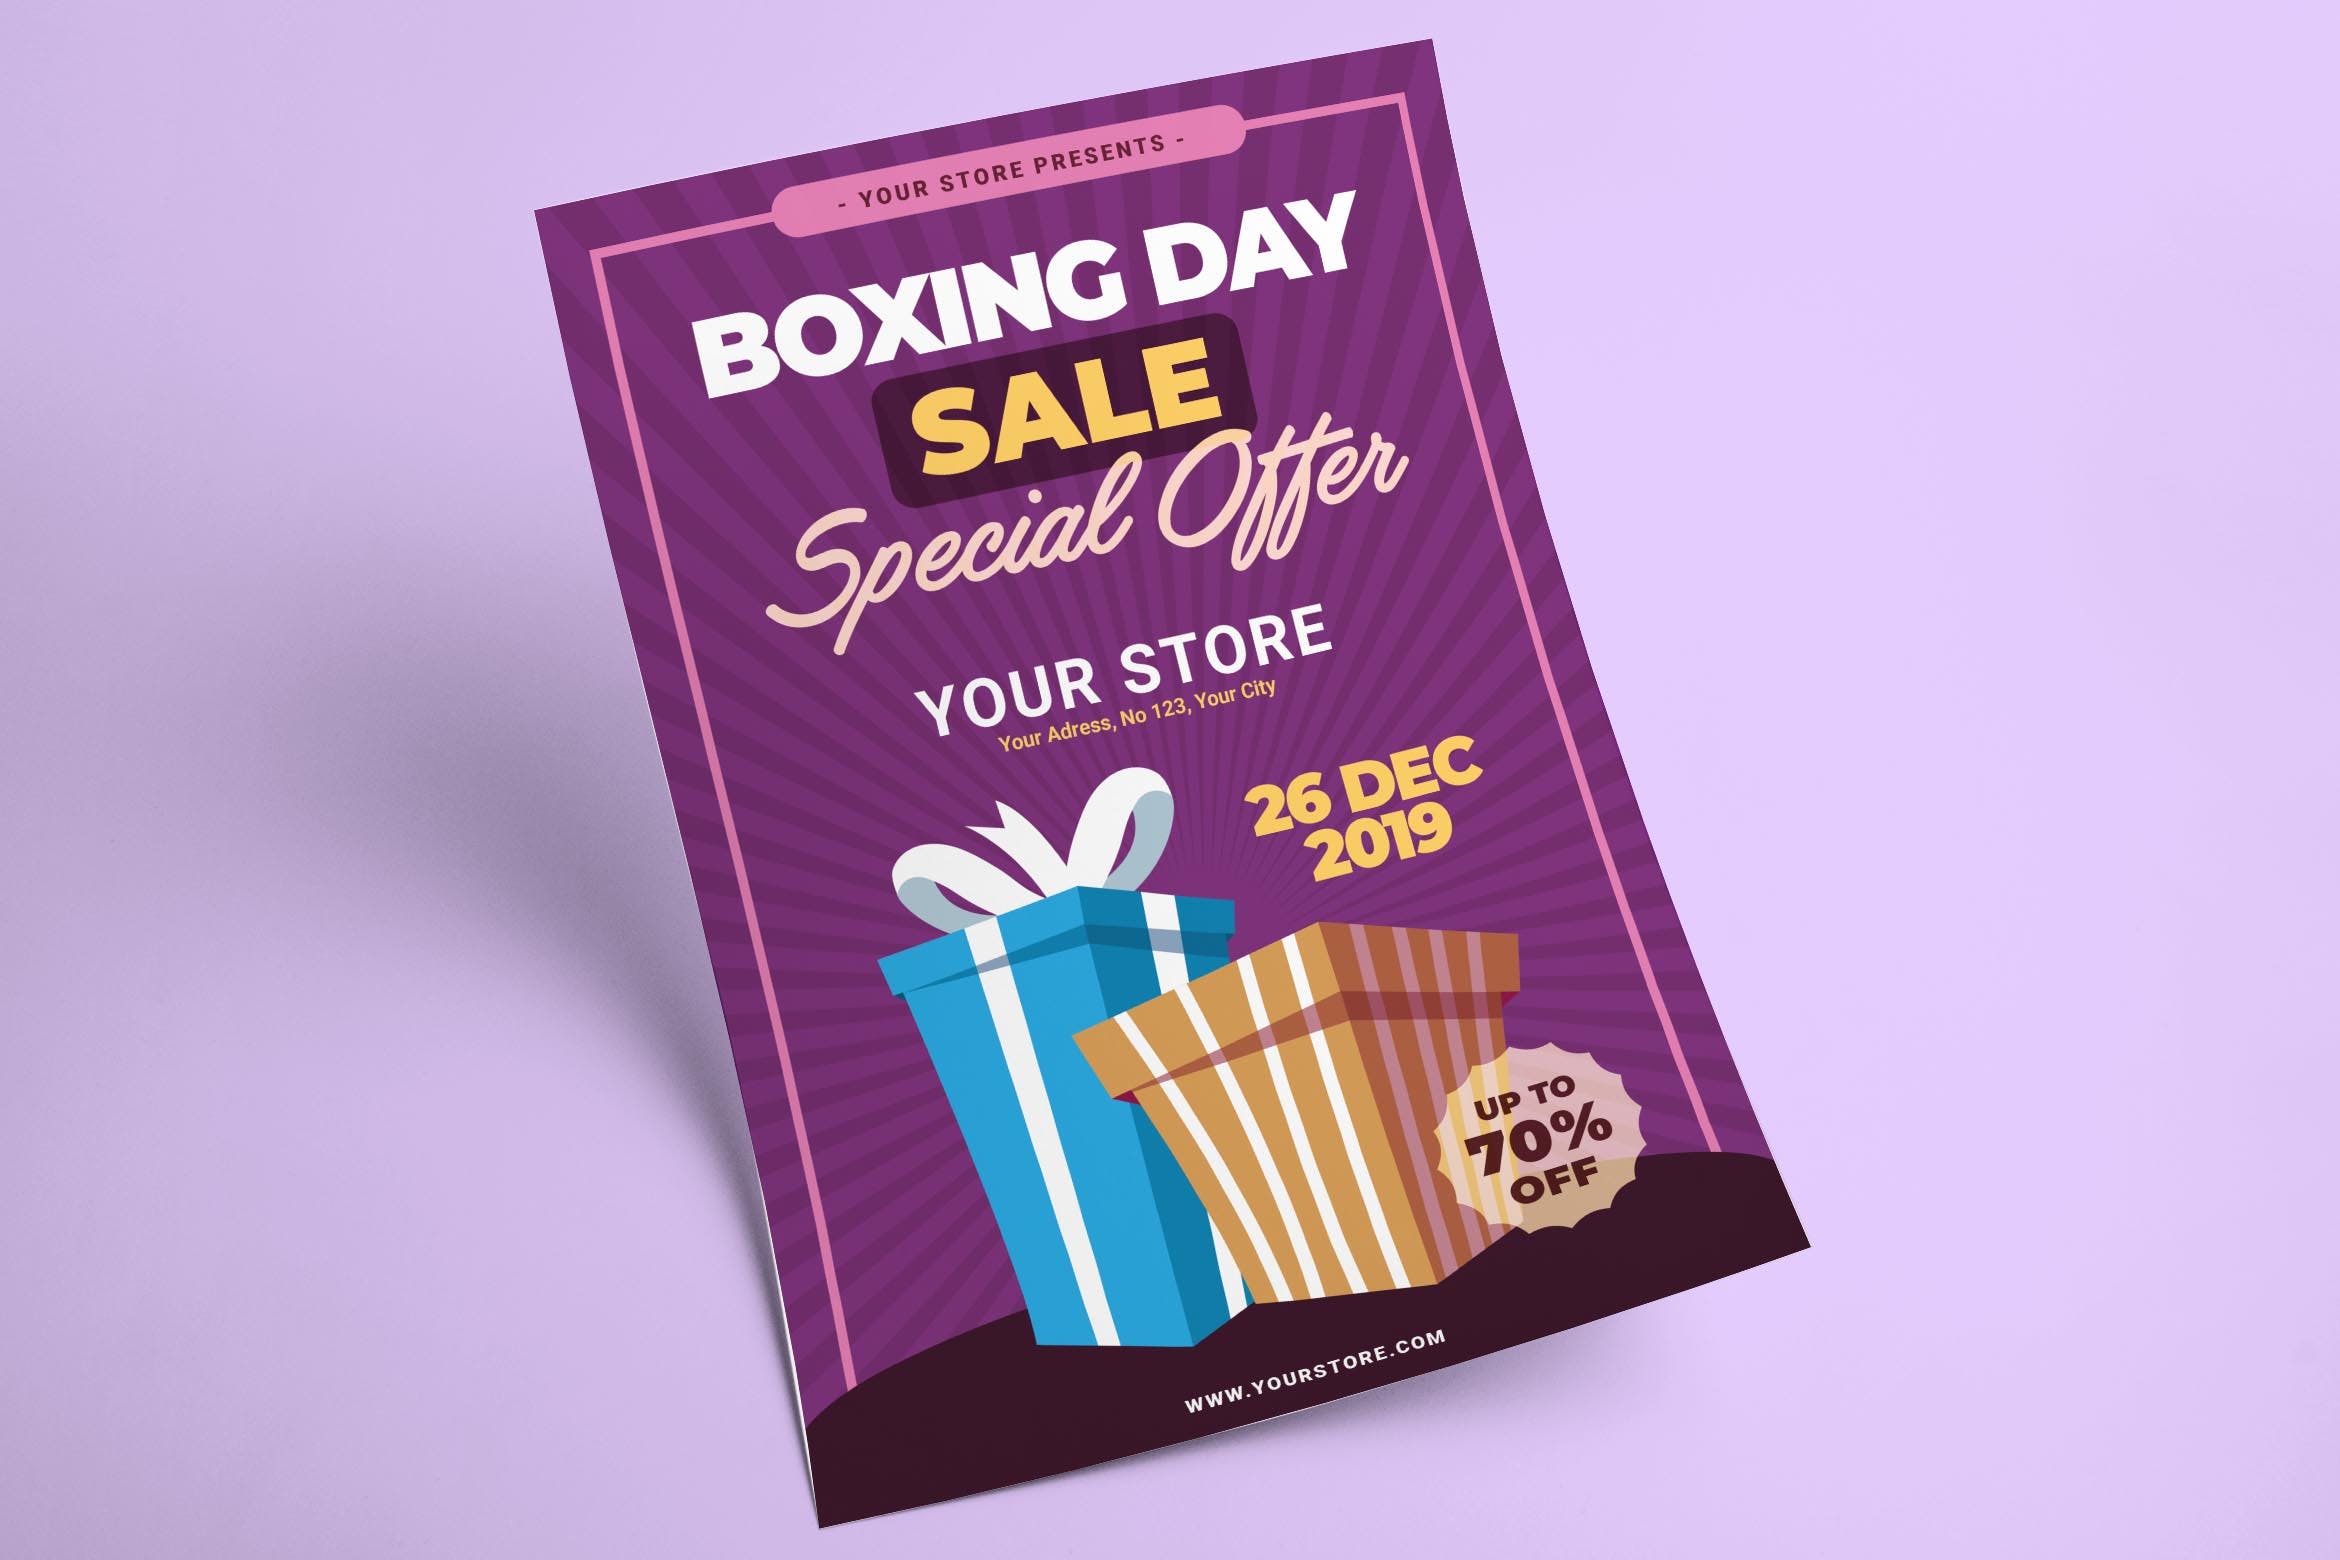 礼品交换日主题节日宣传单设计模板v3 Boxing Day Flyer插图